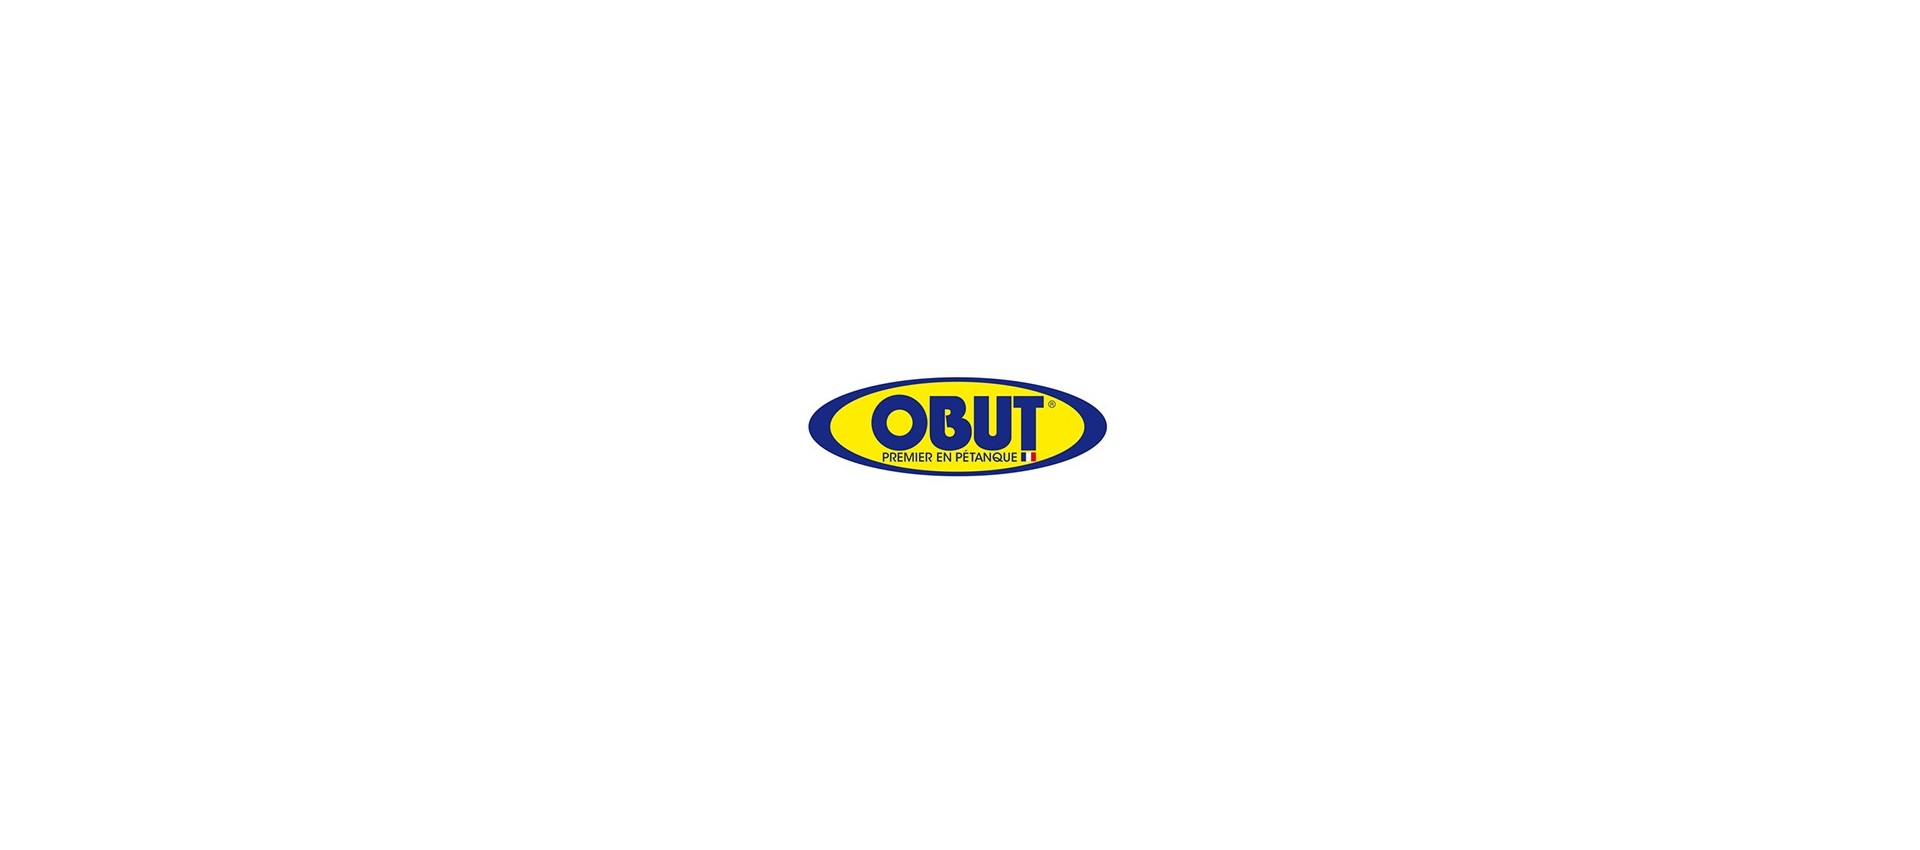 Vente Boules Obut en ligne à prix imbattable, livraison rapide